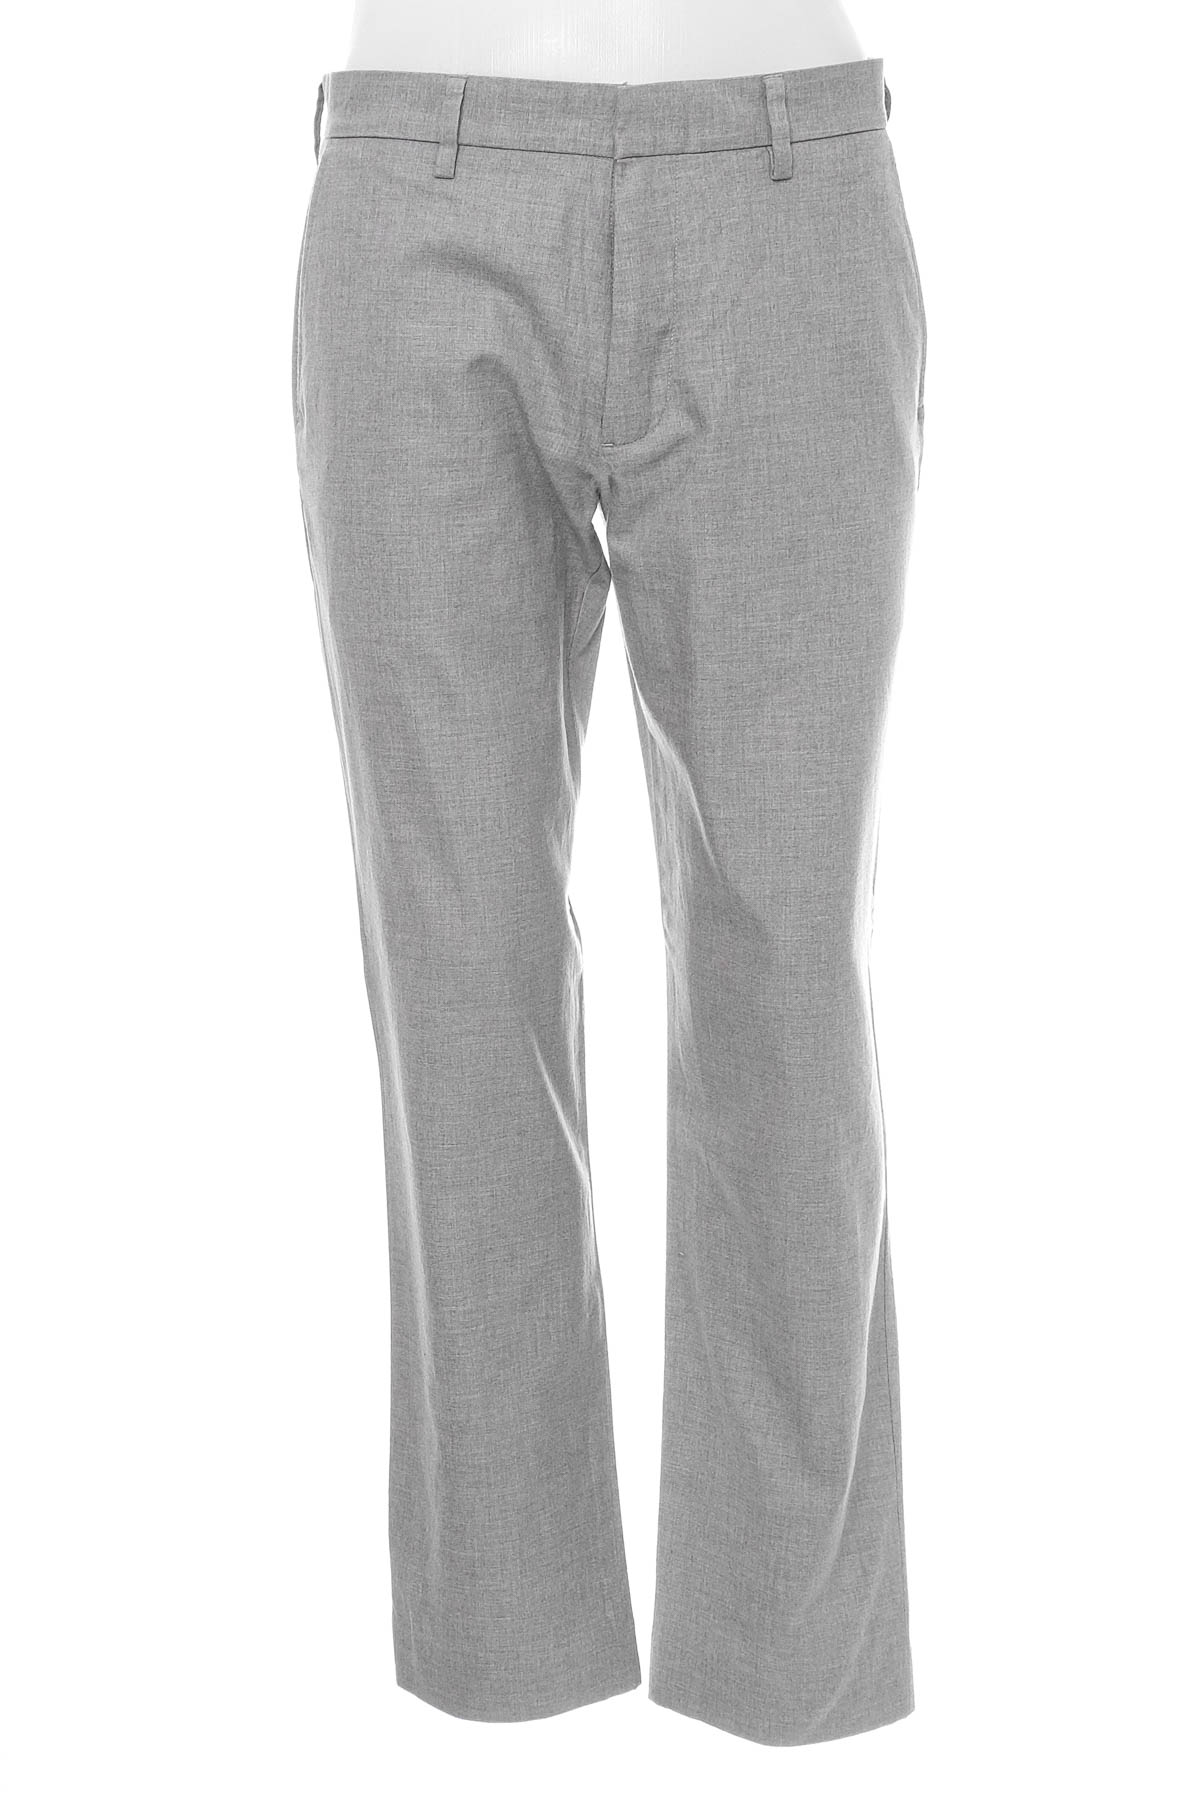 Pantalon pentru bărbați - J.CREW - 0